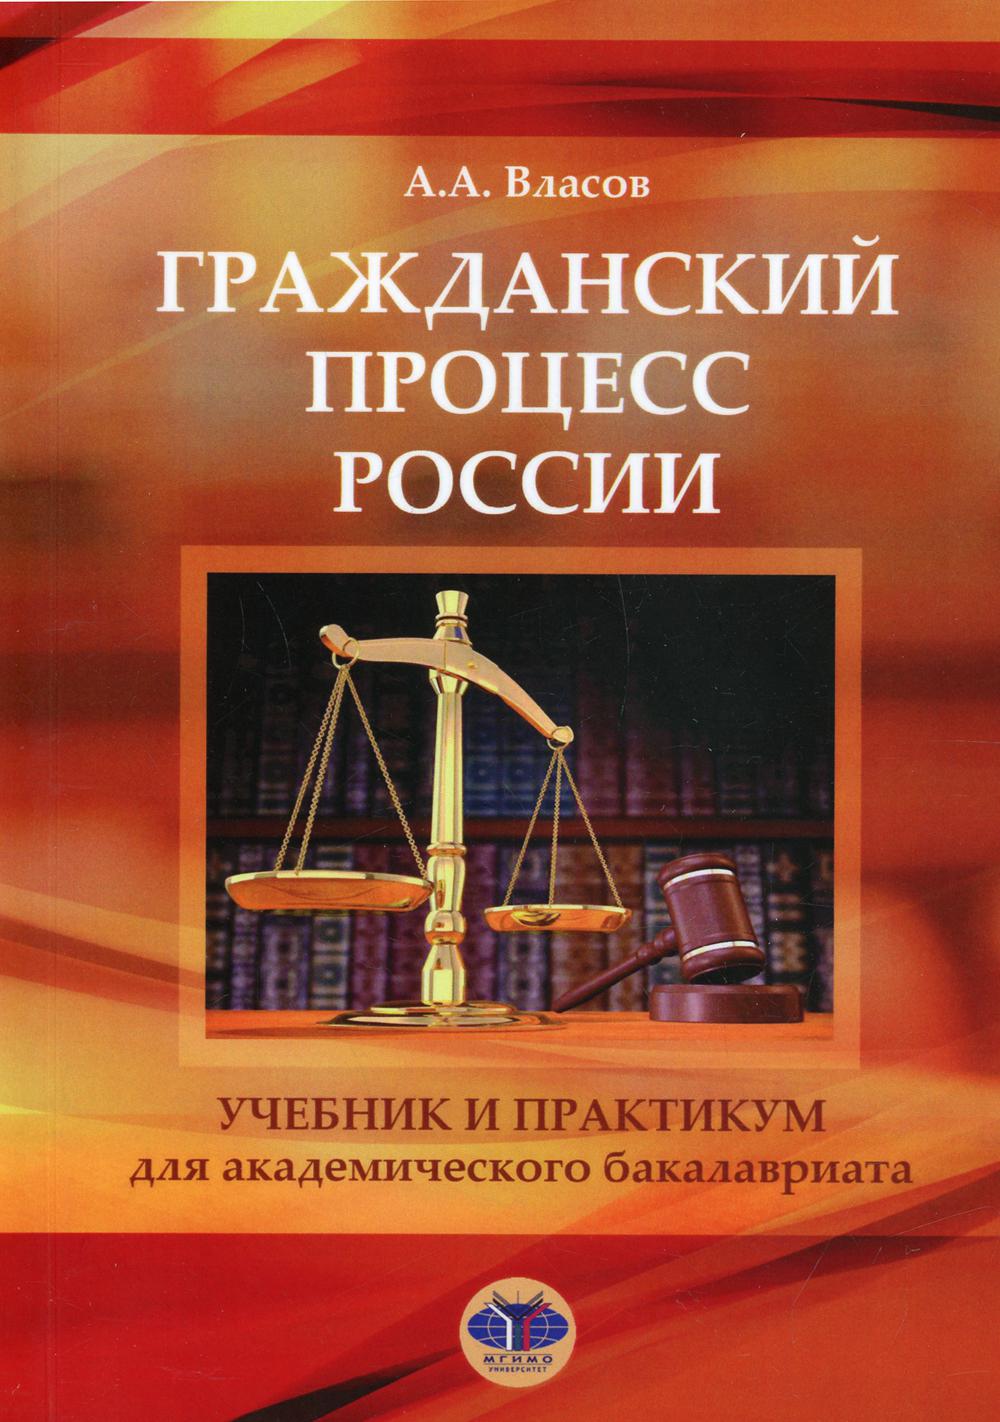 Гражданский процесс России: Учебник и практикум для академического бакалавриата